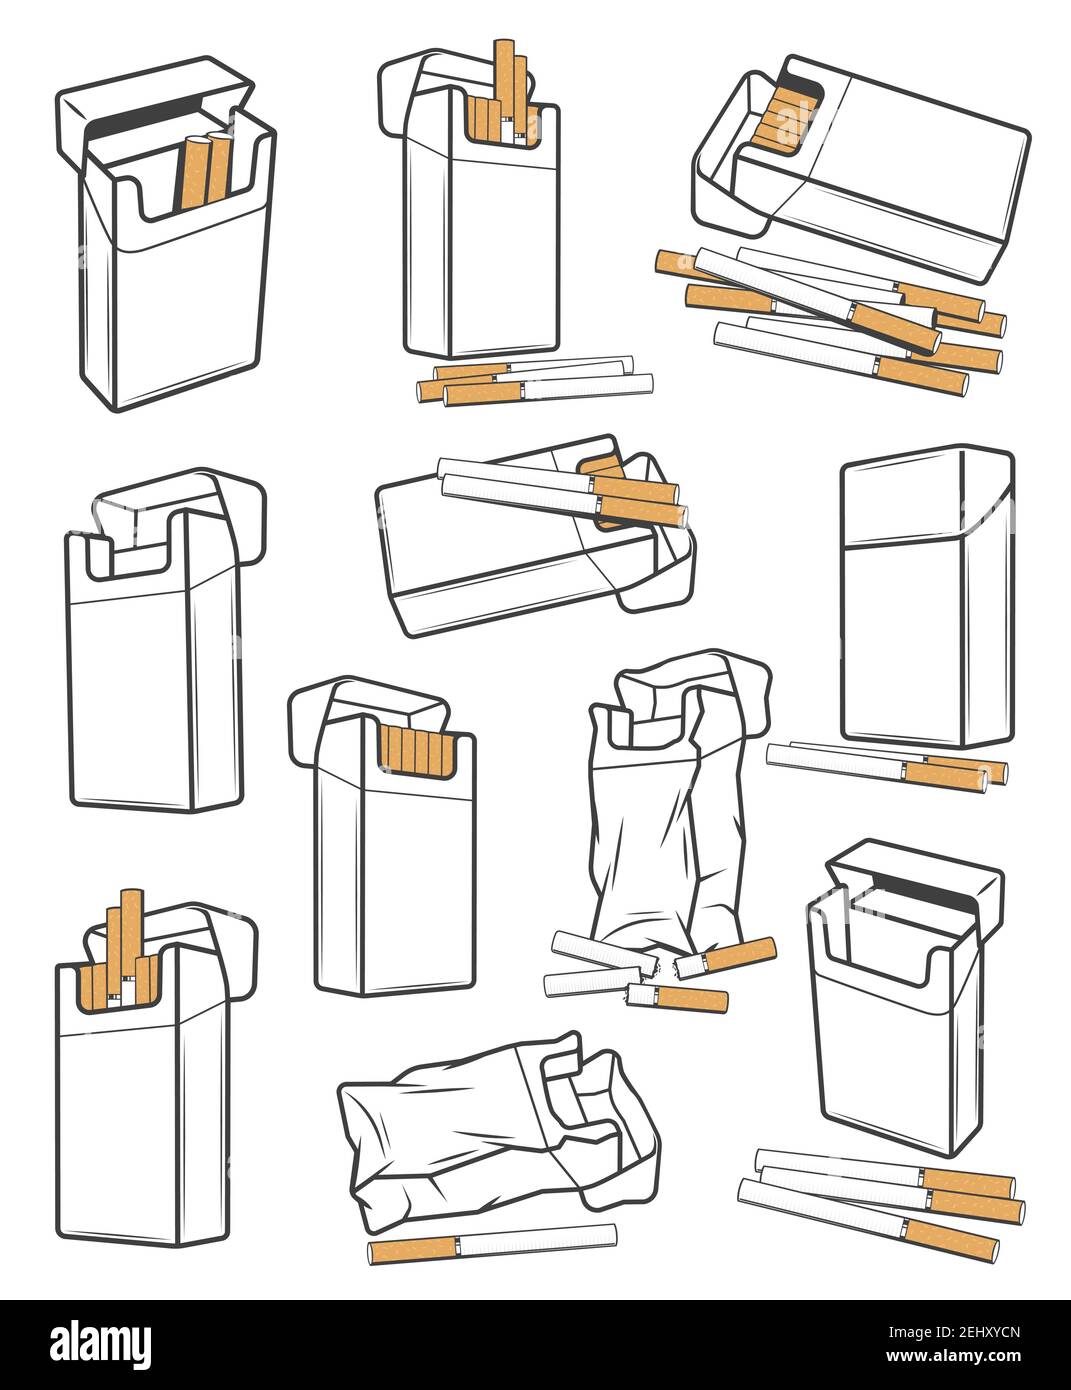 Paquetes de cigarrillos iconos arrugados y desgarrados, vector. Cigarro con filtro abierto y cerrado cajas de embalaje, paquetes de cartón vacío y lleno de cajas de embalaje en blanco. Smok Ilustración del Vector